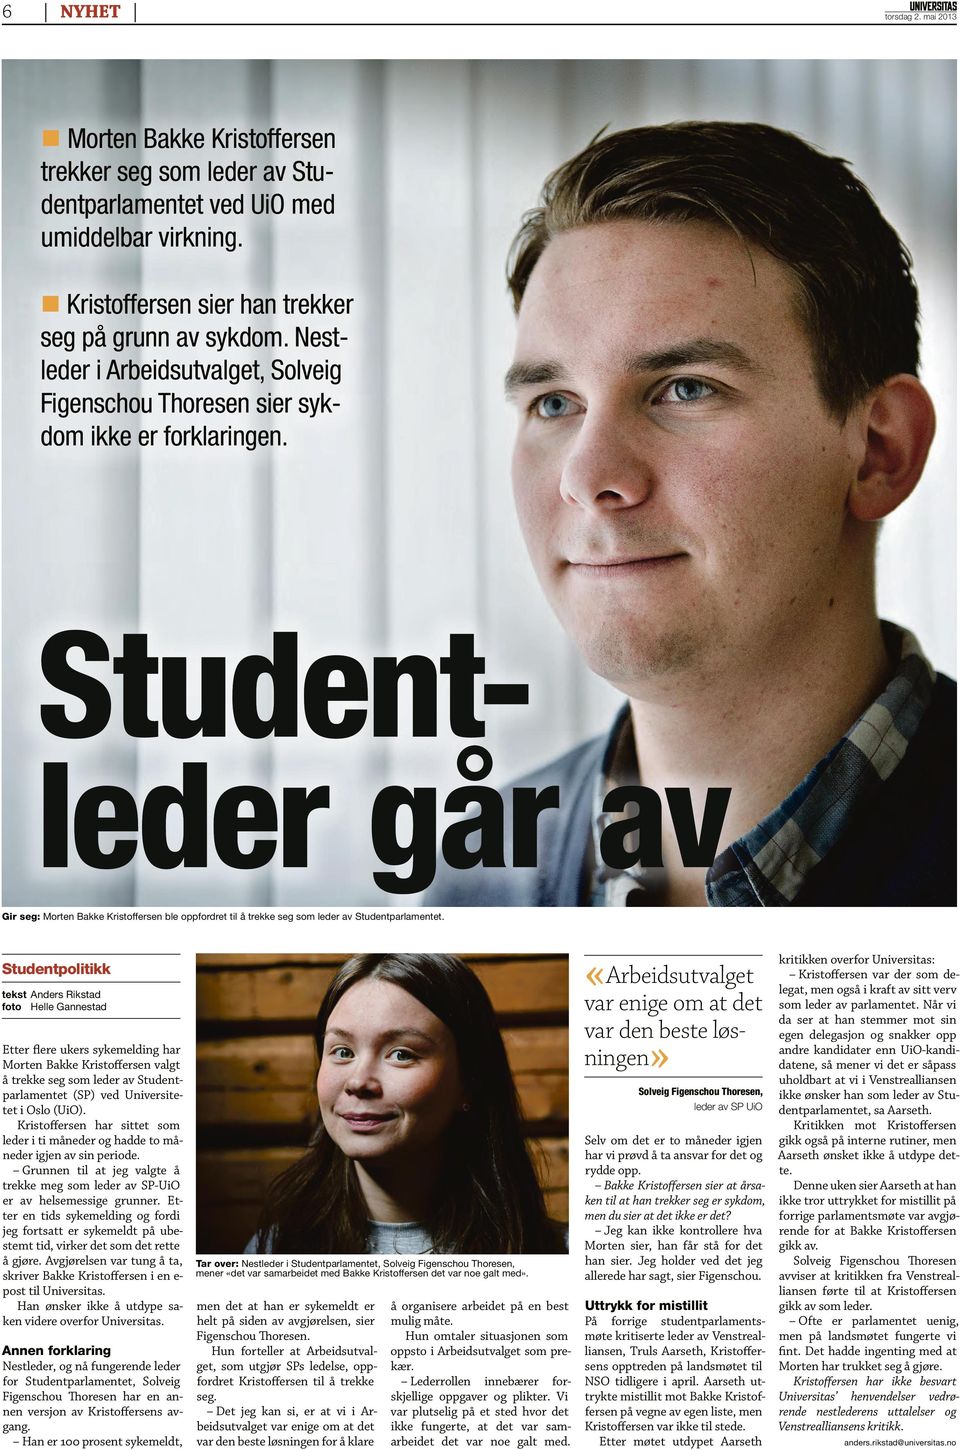 Studentleder går av Gir seg: Morten Bakke Kristoffersen ble oppfordret til å trekke seg som leder av Studentparlamentet.